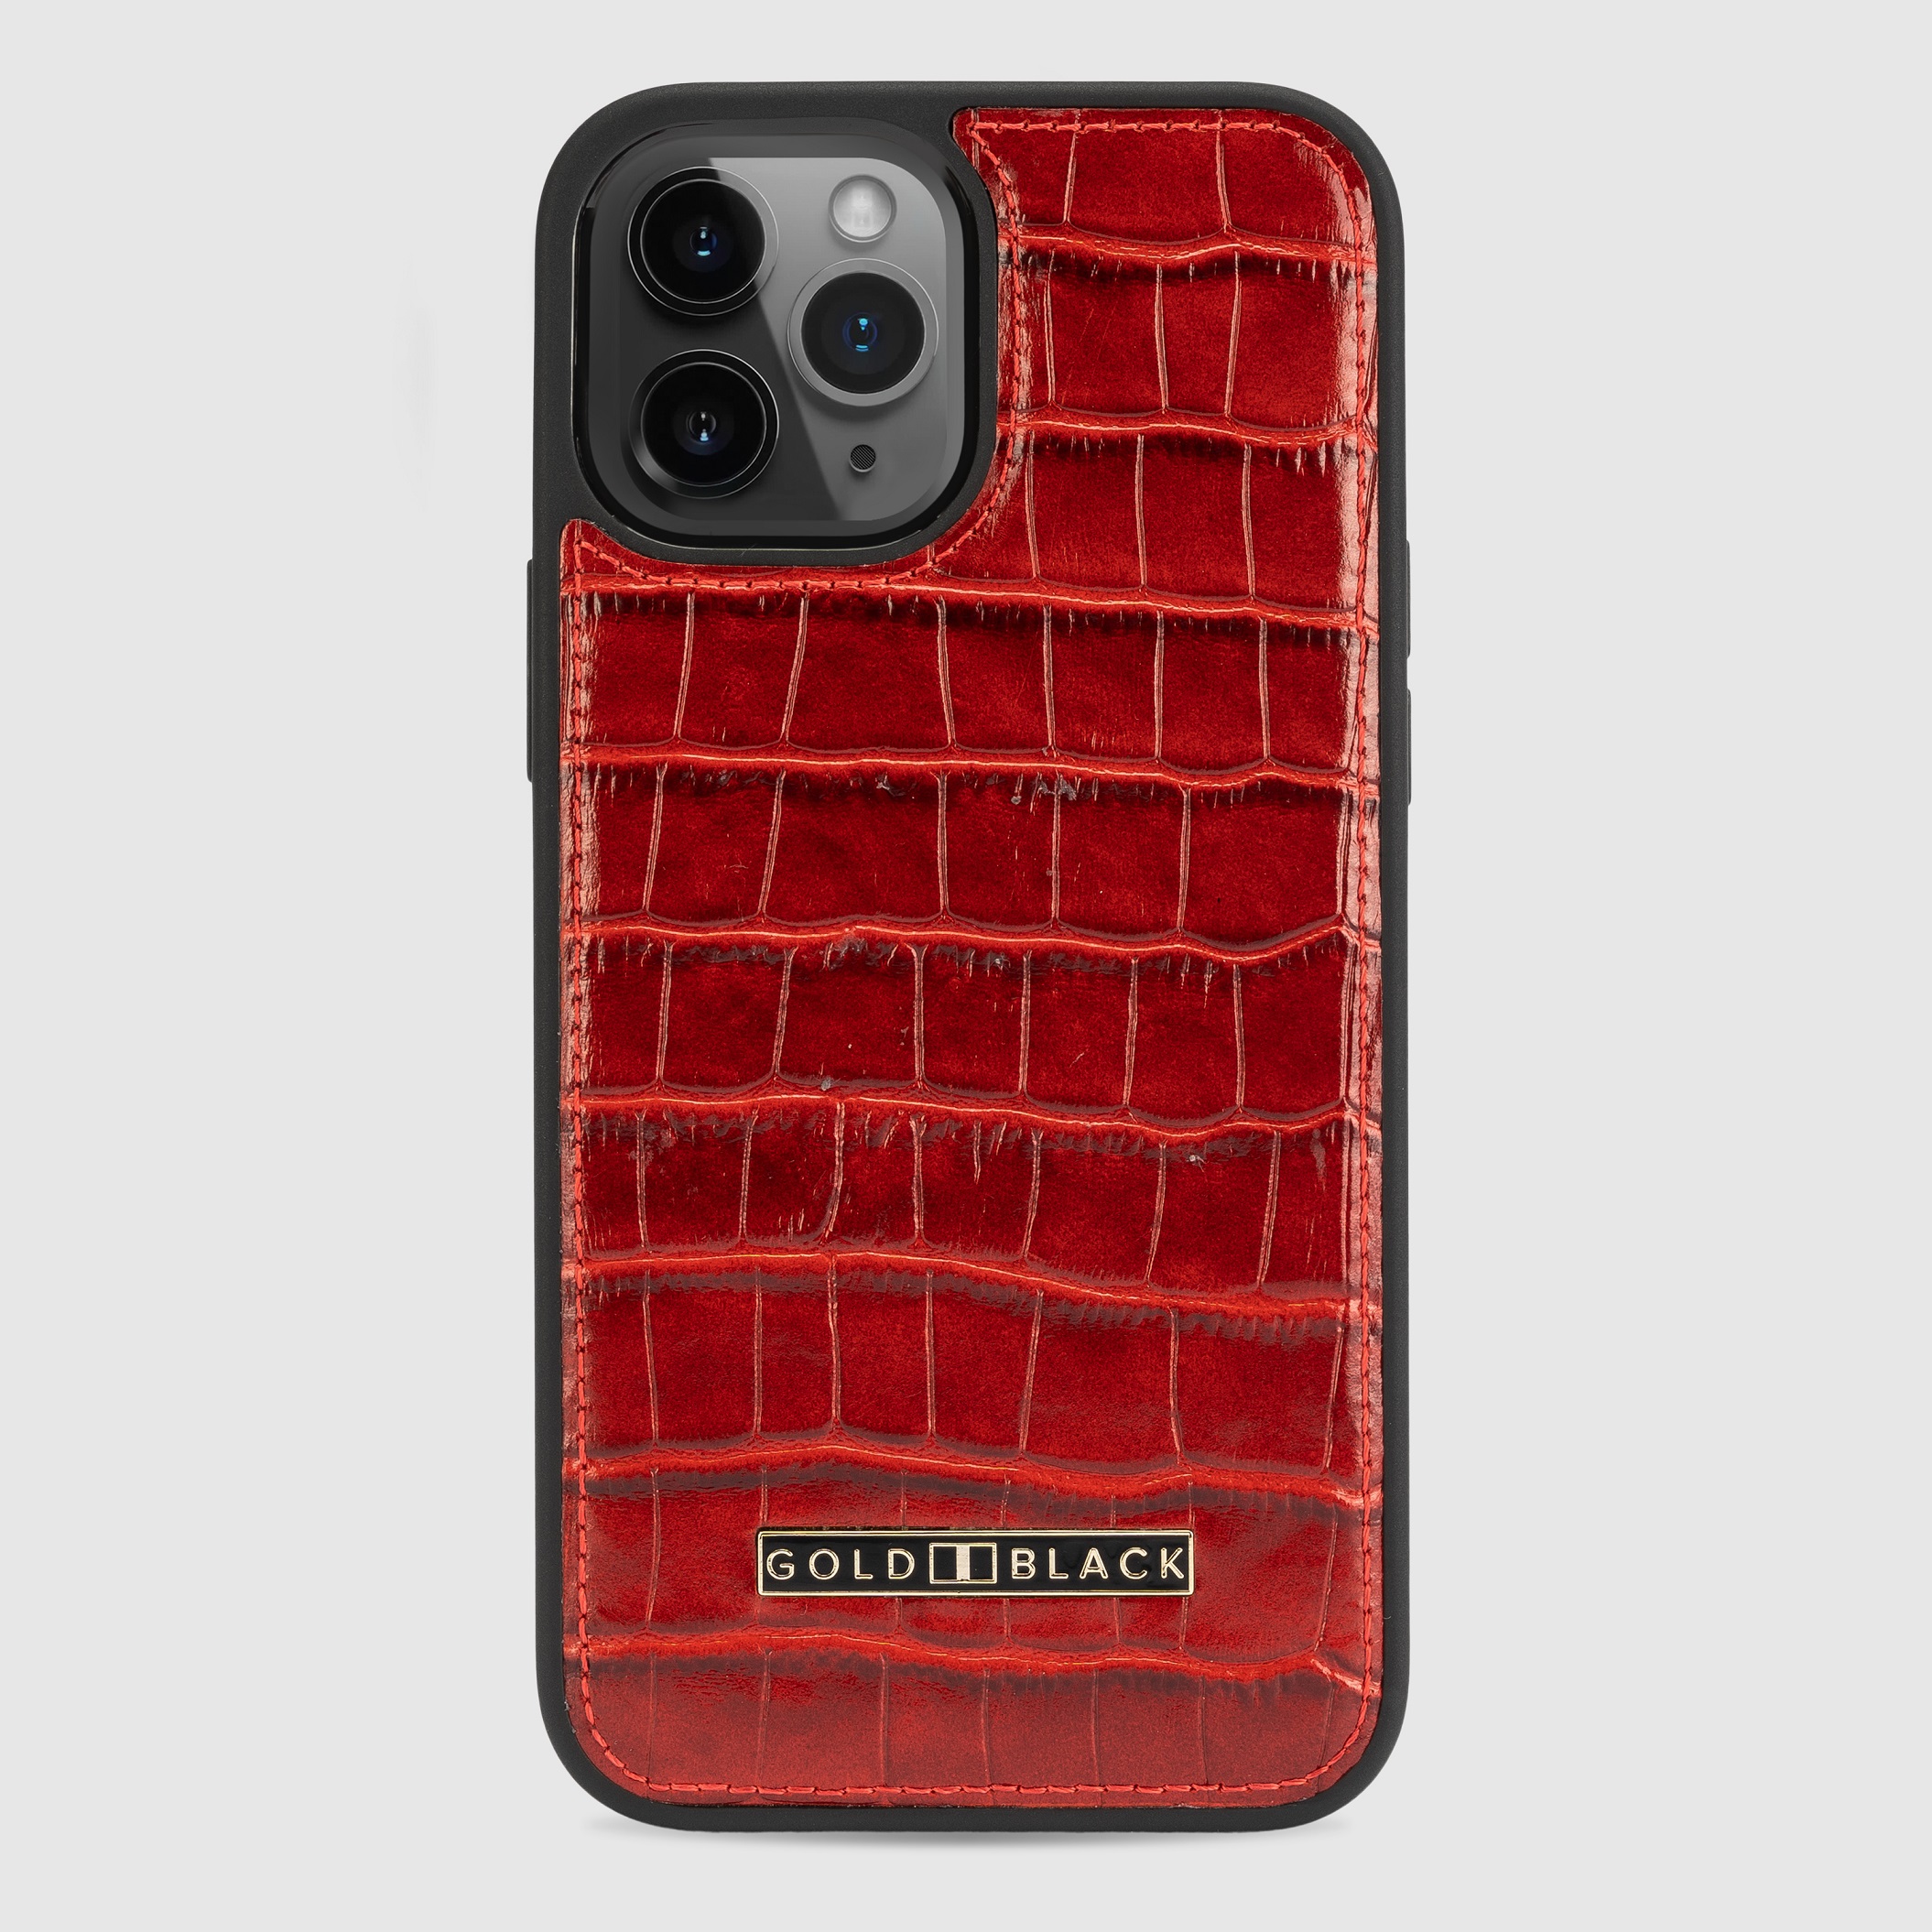 غطاء جوال ايفون 12 برو ماكس (كروكو) - احمر